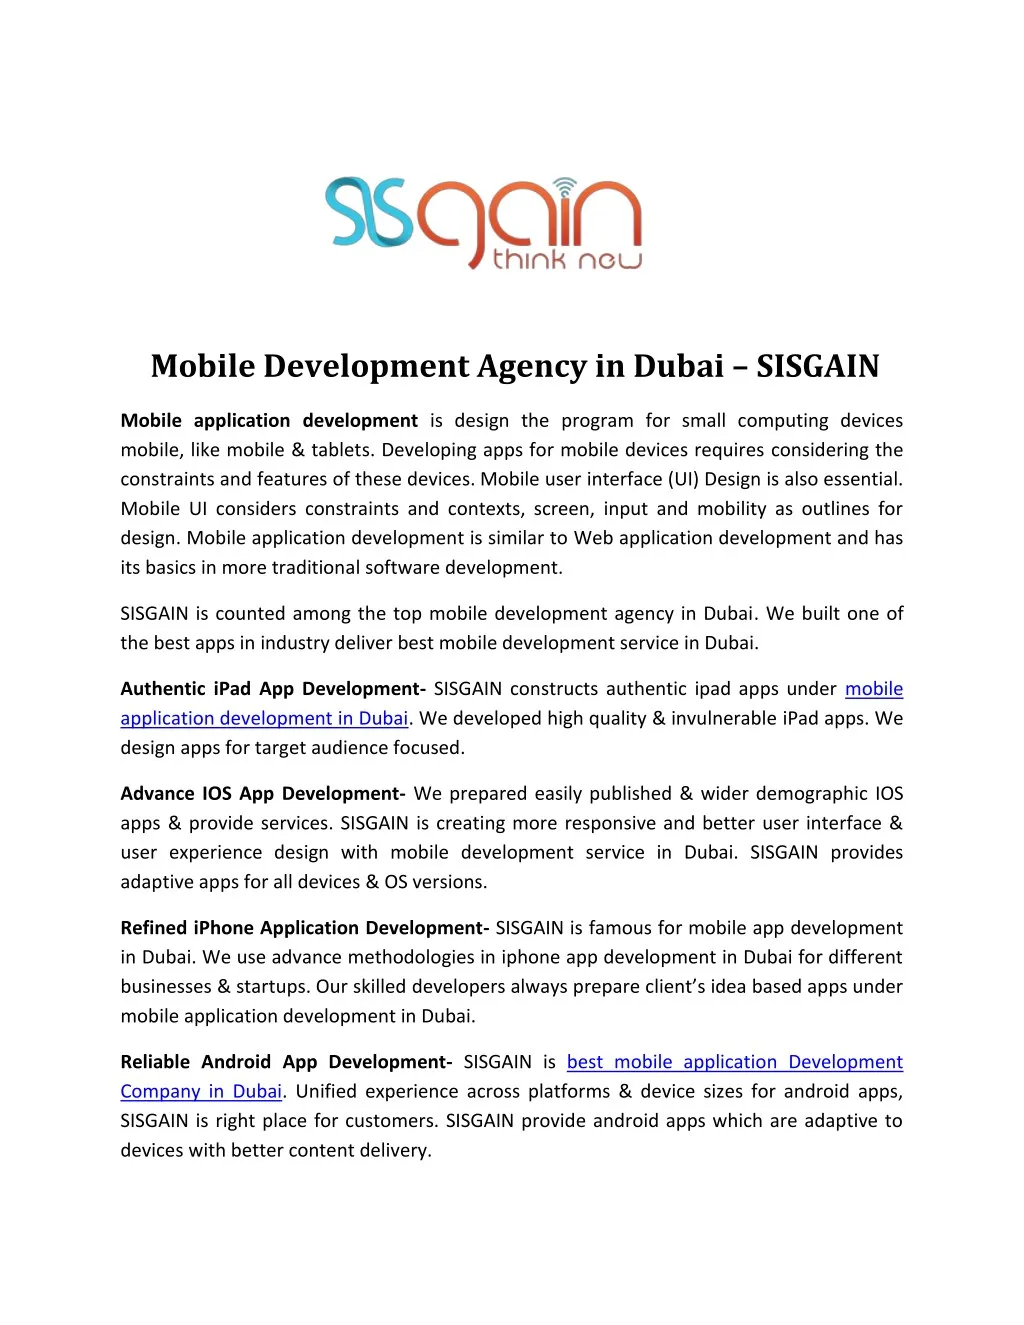 mobile development agency in dubai sisgain